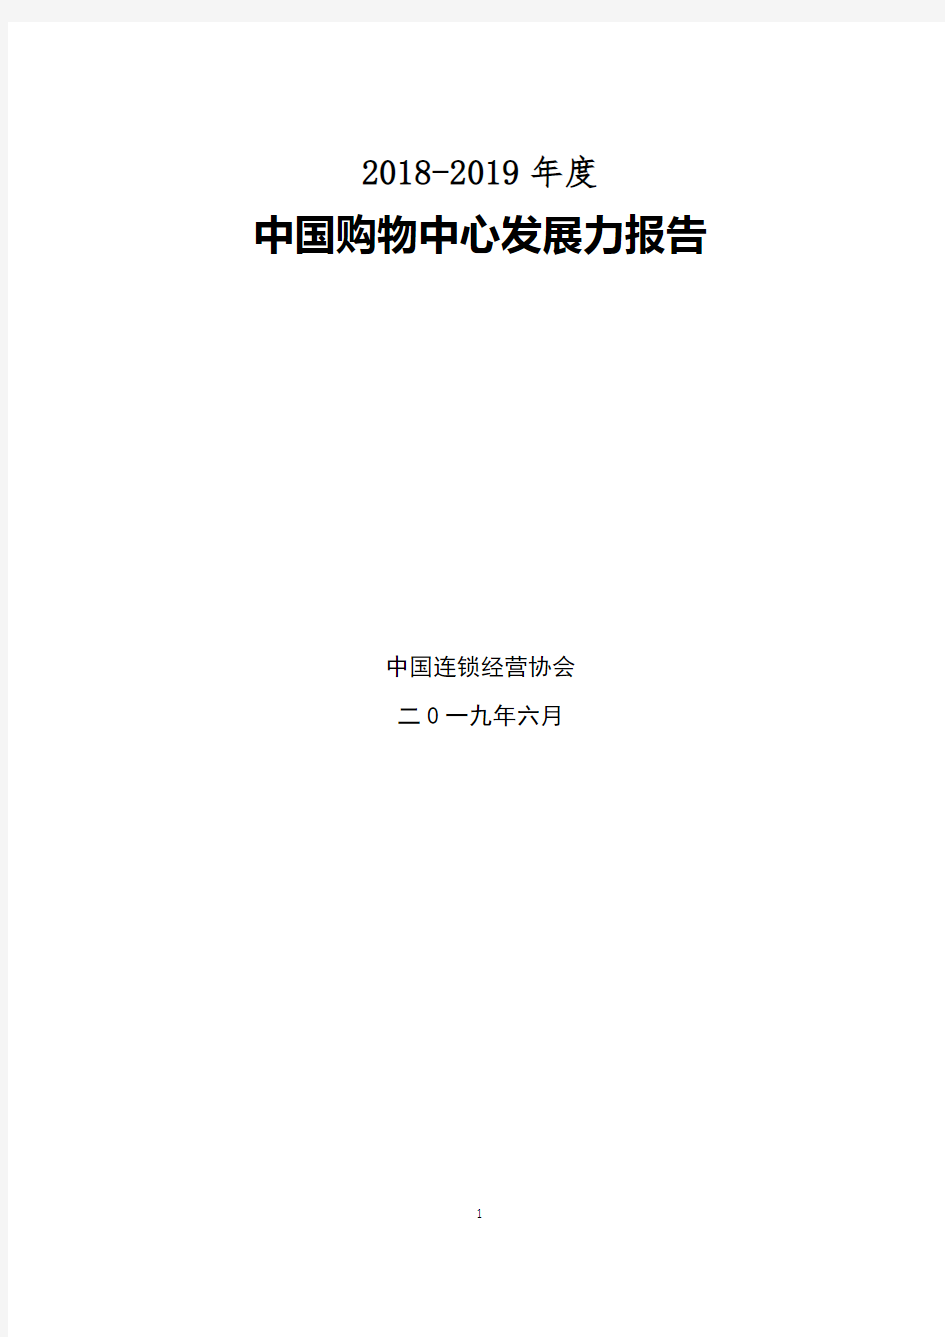 2019年度中国购物中心发展力报告-中国连锁经营协会-2019.6-18页(5)